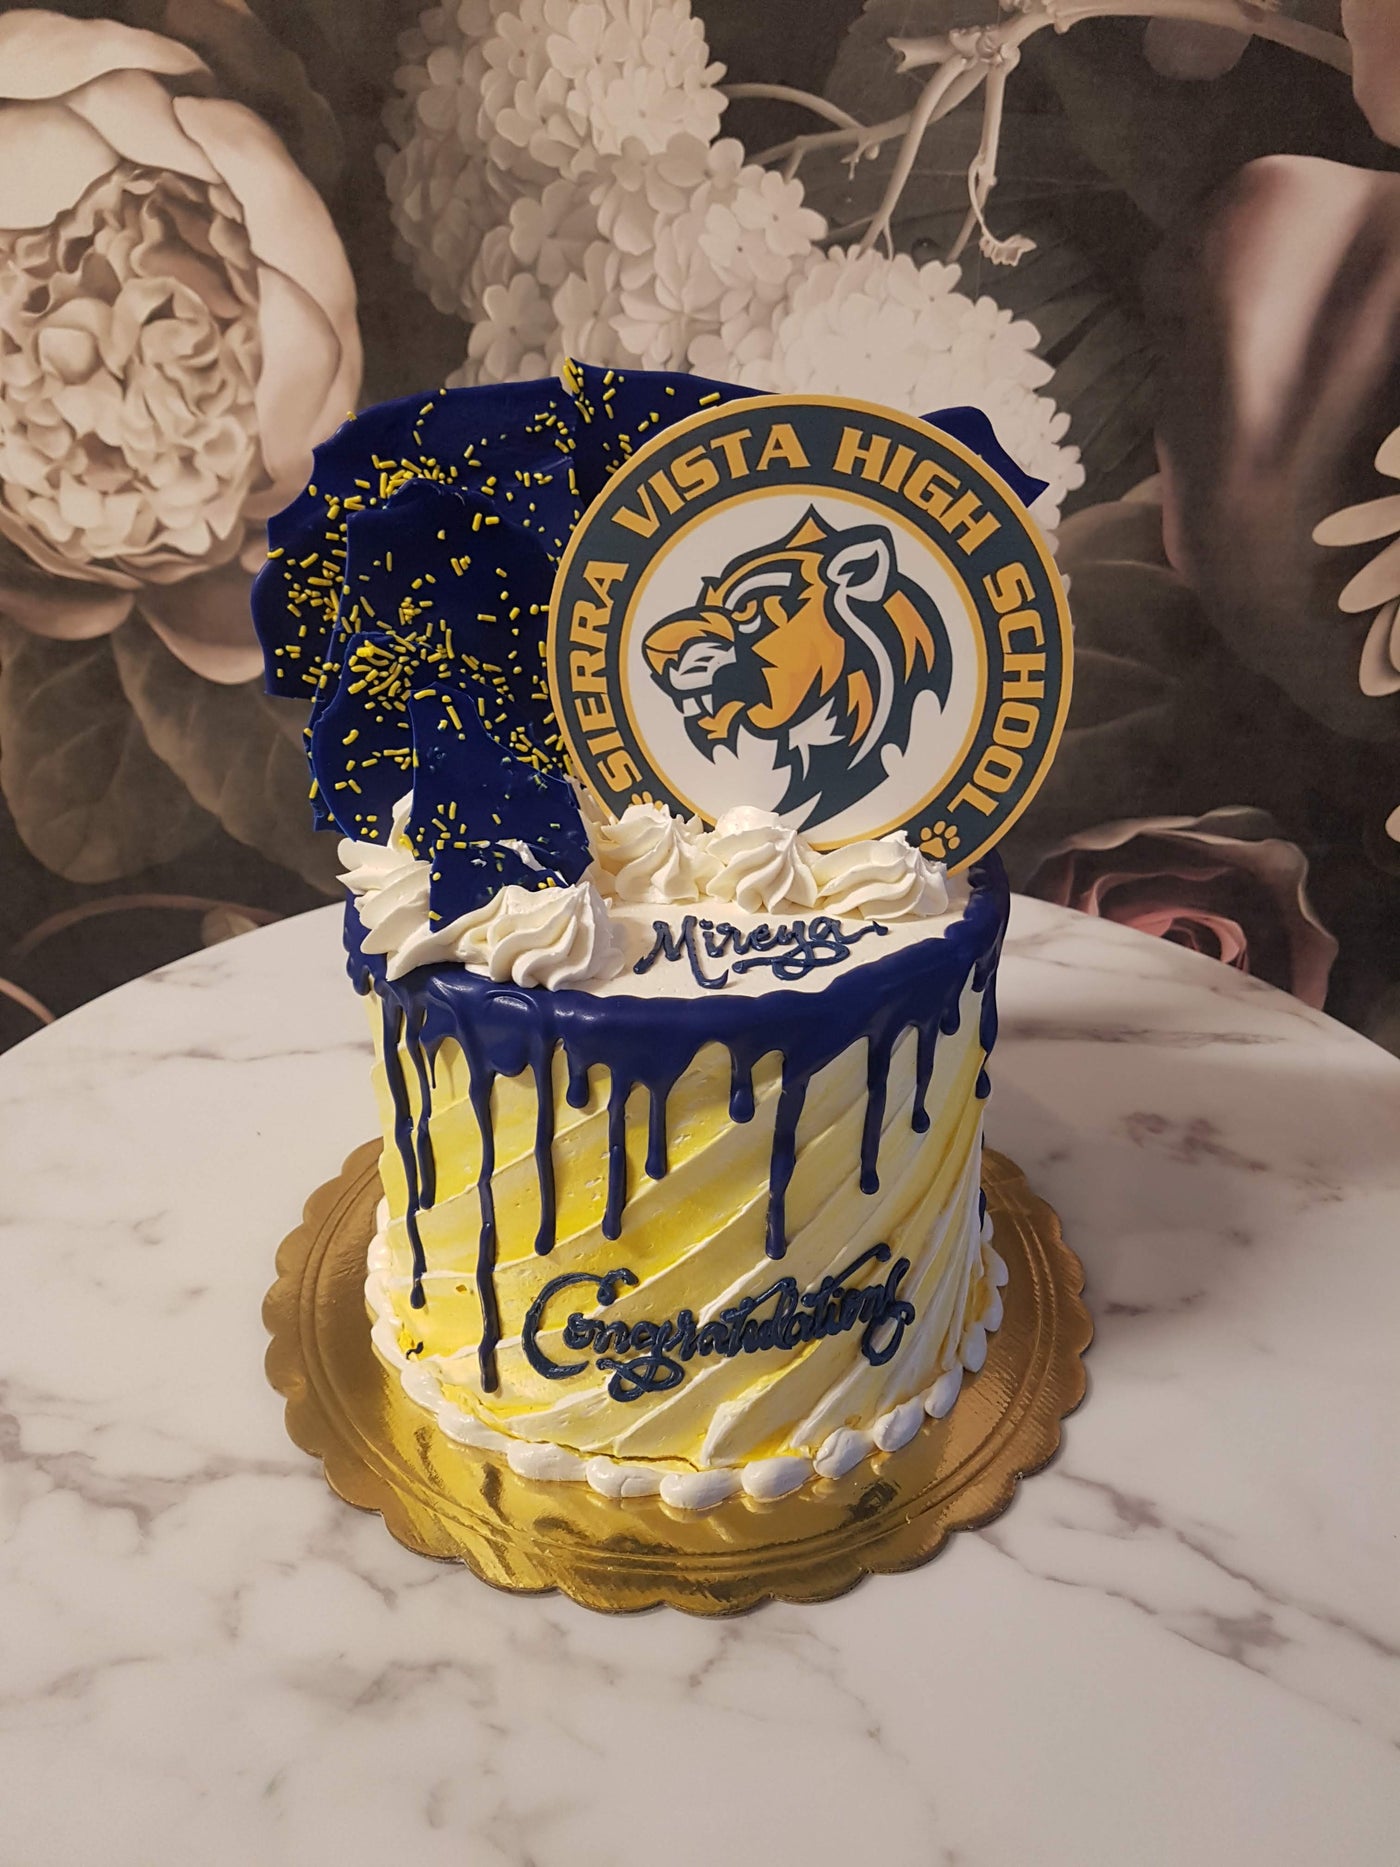 Best graduation cake design ideas in Nigeria 2019 - Legit.ng